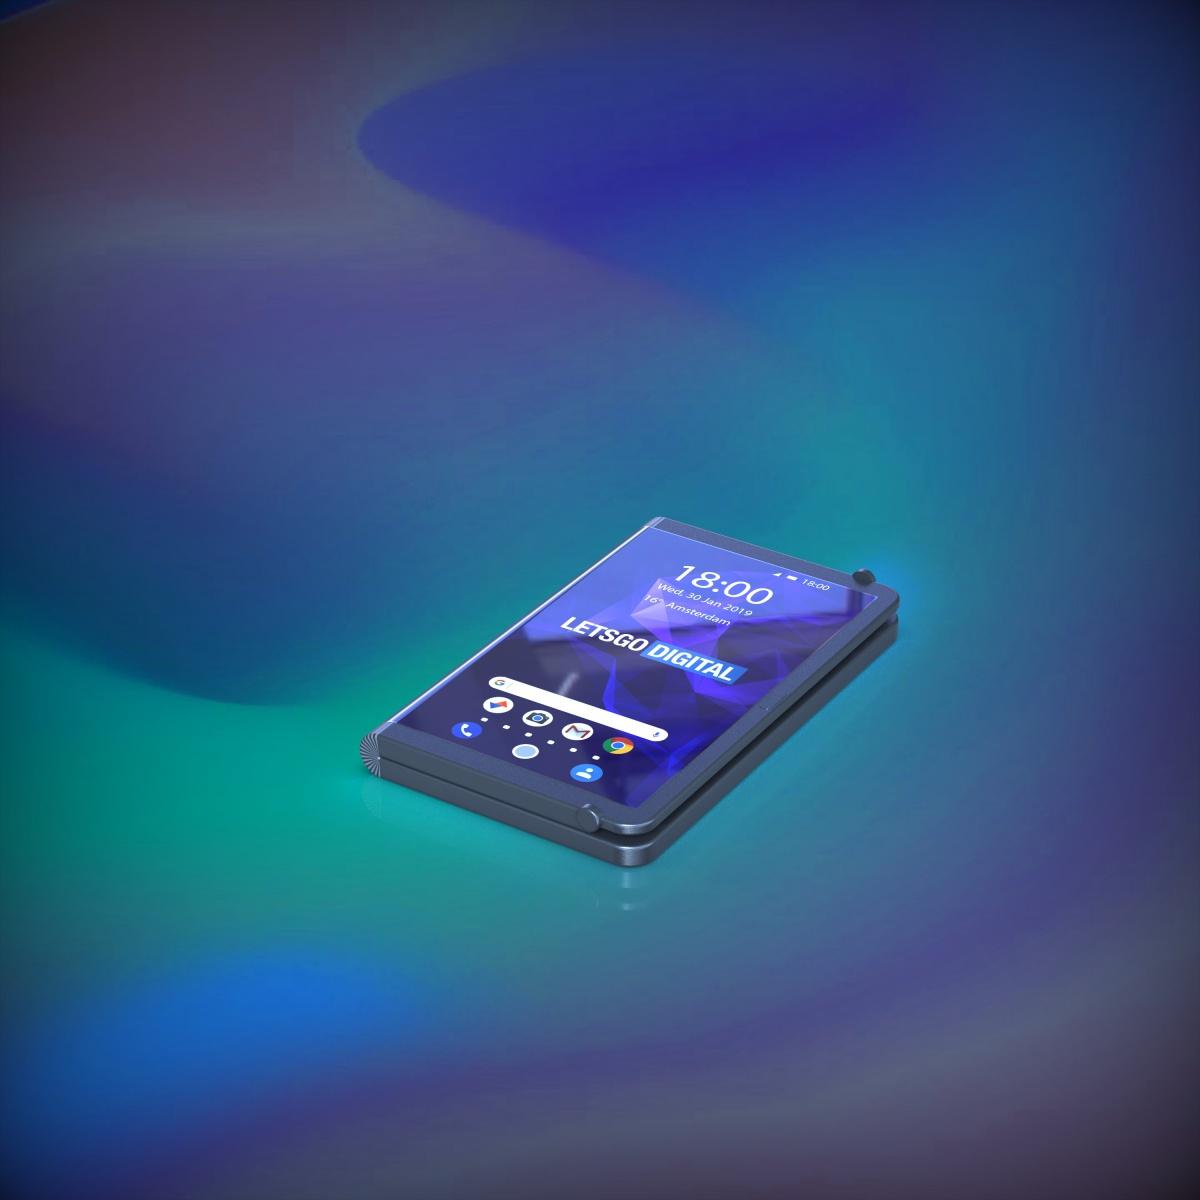 Składany smartfon Samsunga dla graczy class="wp-image-879451" 